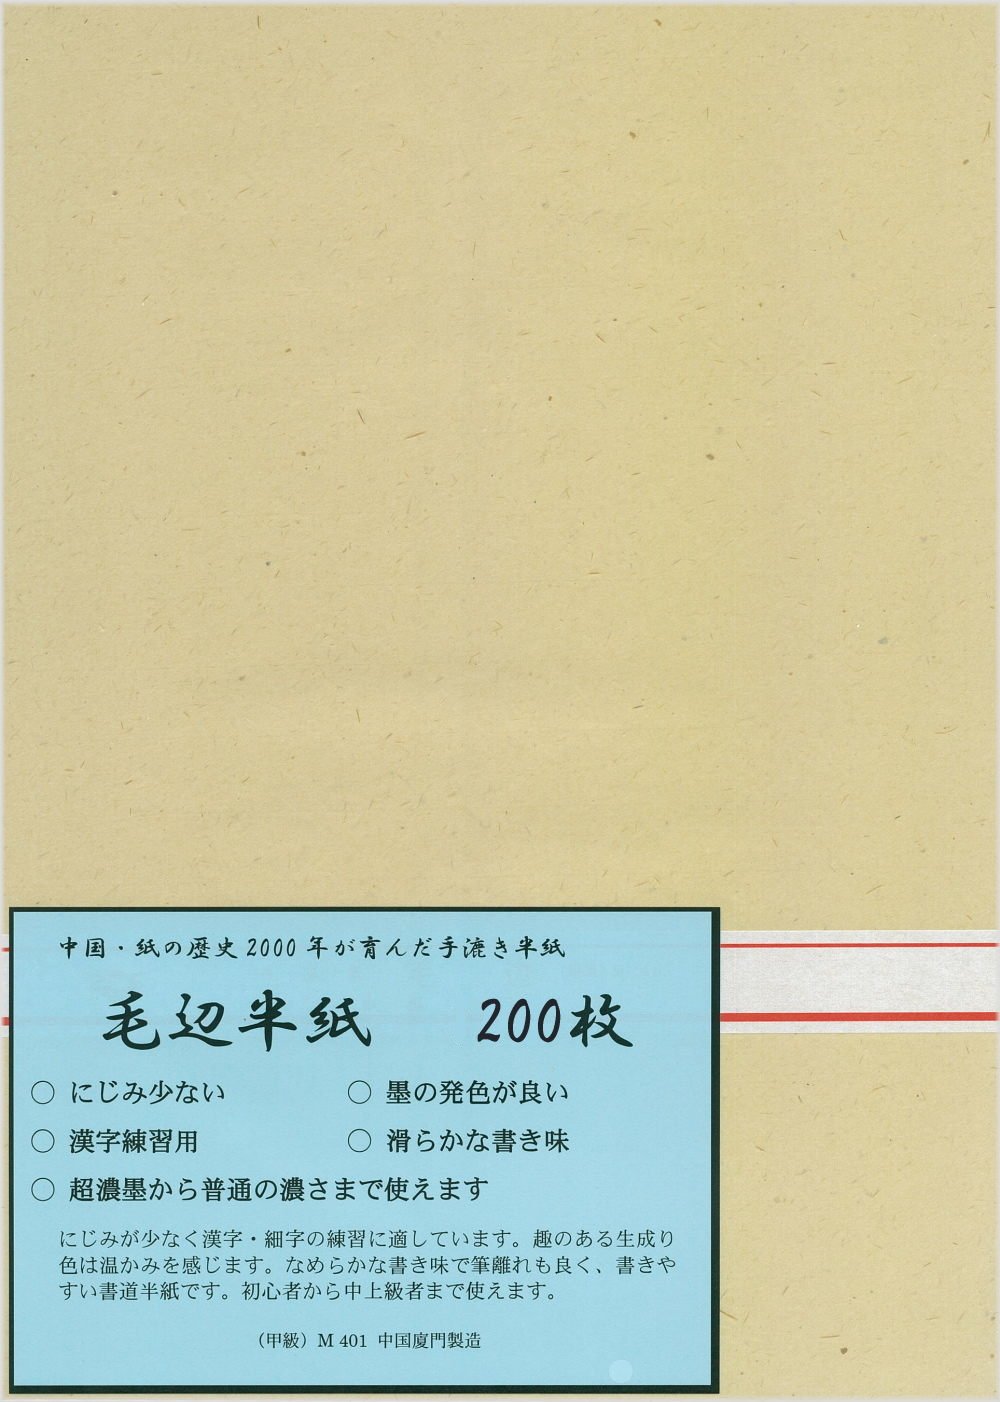 . слива . иероглифы для половина бумага шерсть сторона половина бумага (. класс )M401 200 листов 